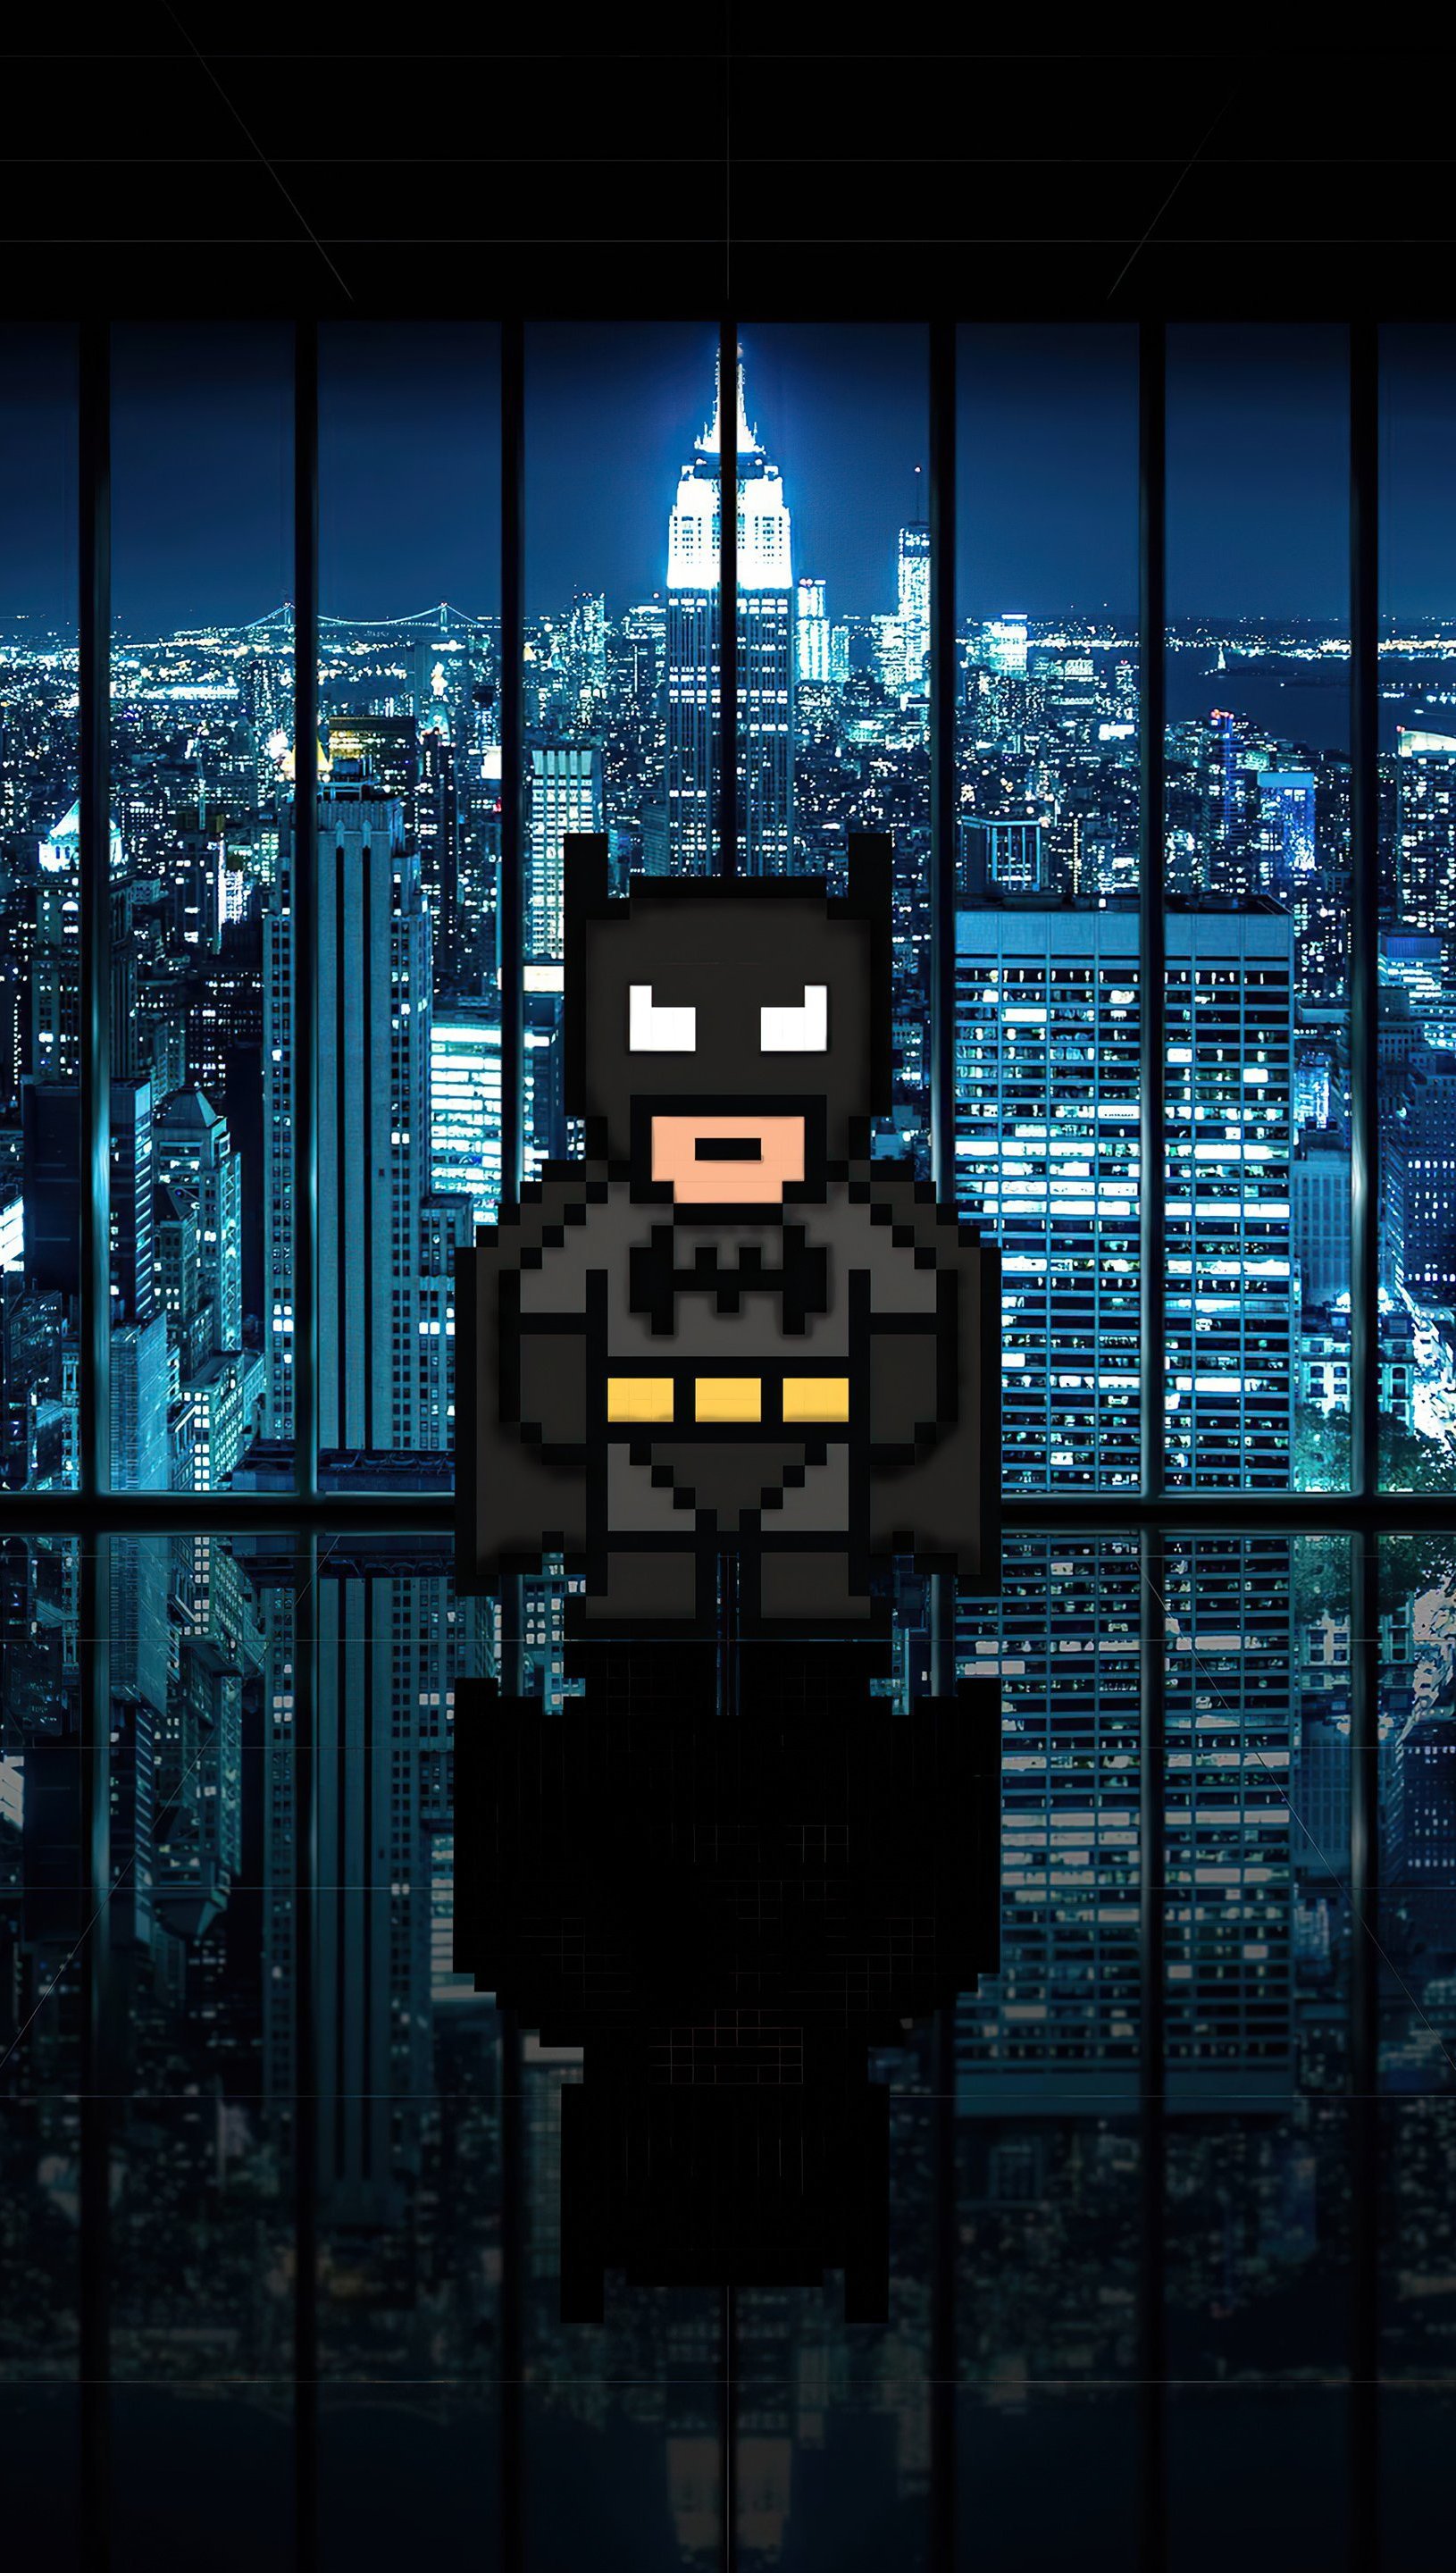 Fondos de pantalla Batman 8 Bits Vertical